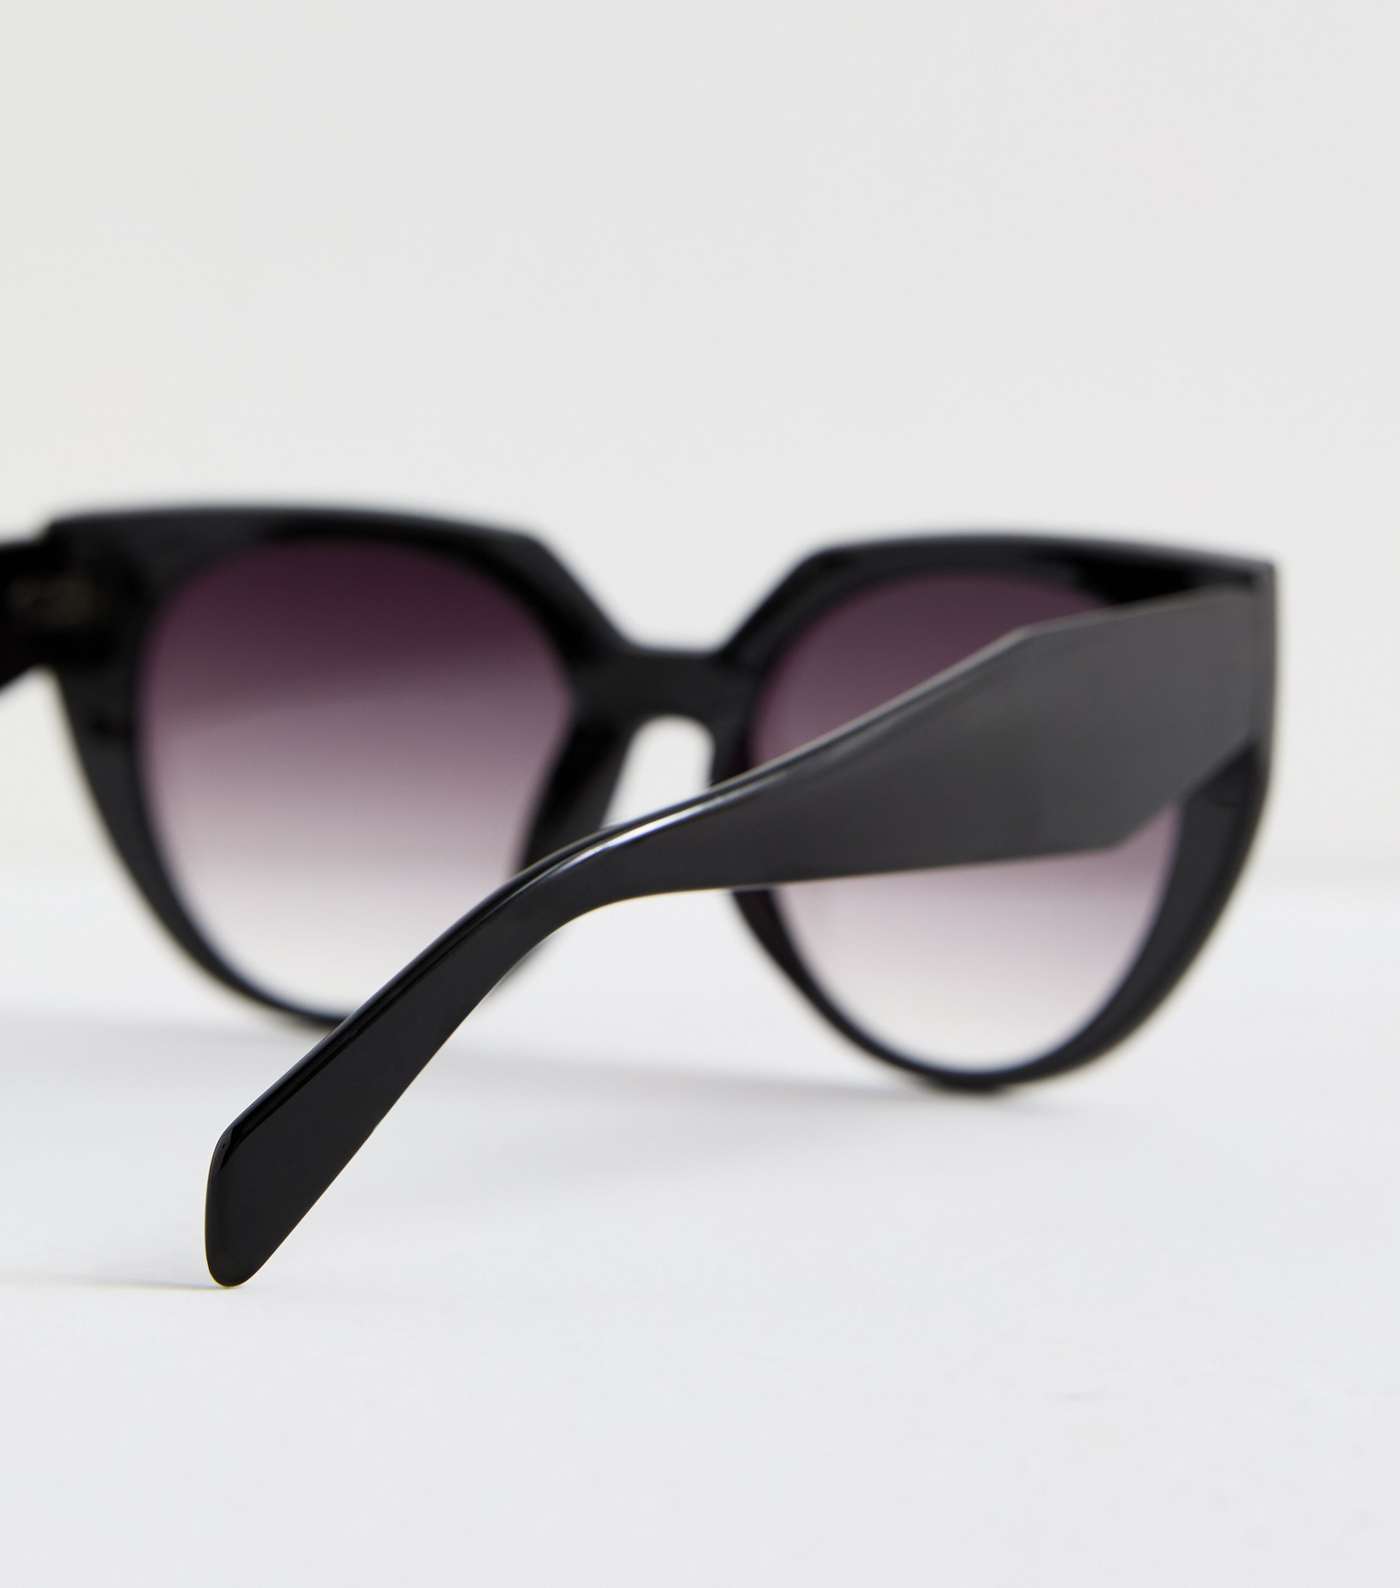 Black Cat Eye Frame Sunglasses Image 4